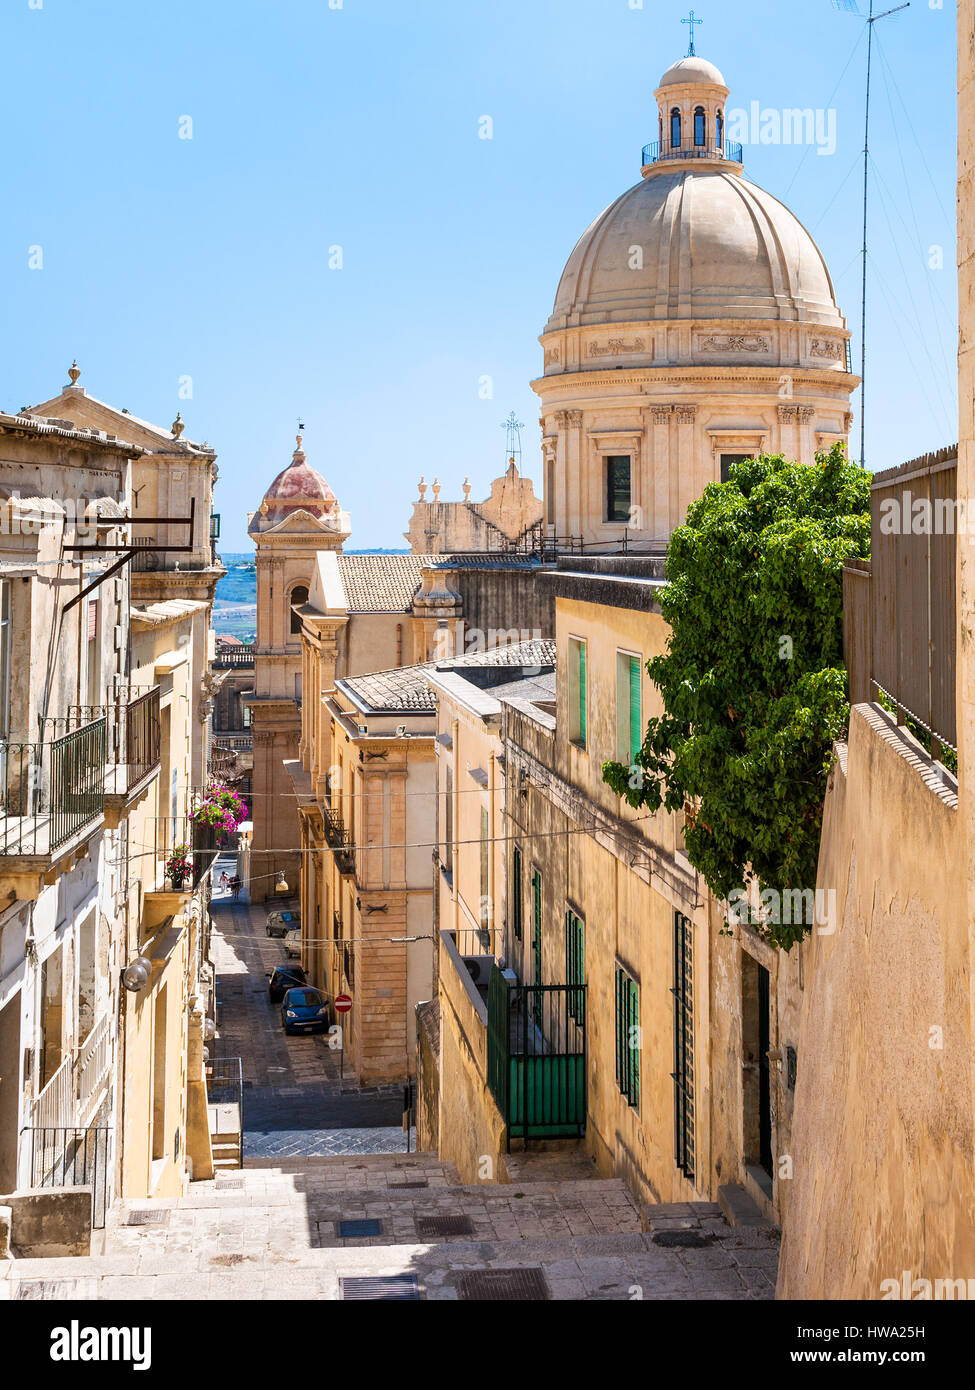 Reisen Sie nach Italien - Straße und Blick auf die Kuppel der Kathedrale in der Stadt Noto auf Sizilien Stockfoto